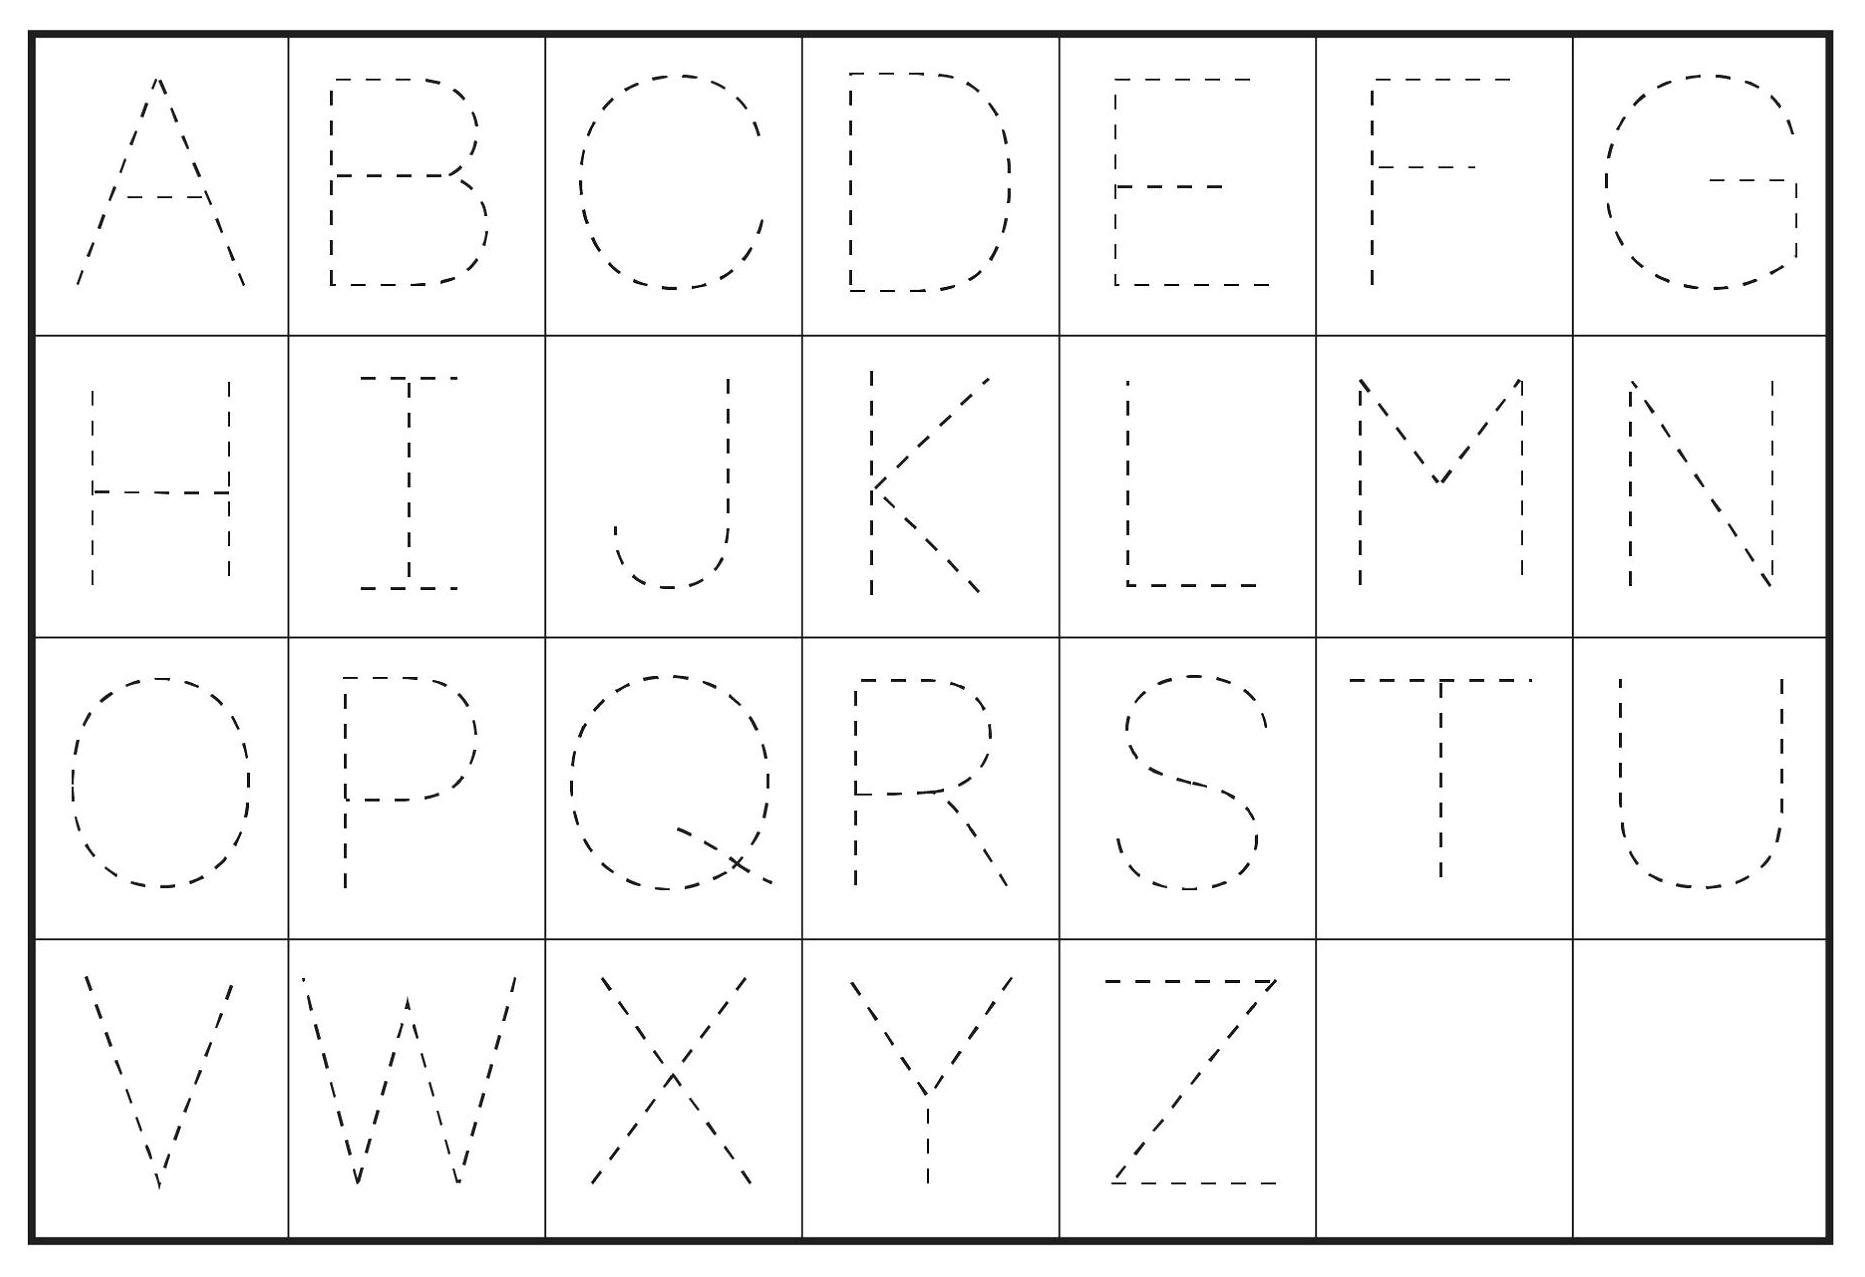 free alphabet printables for preschool one platform for